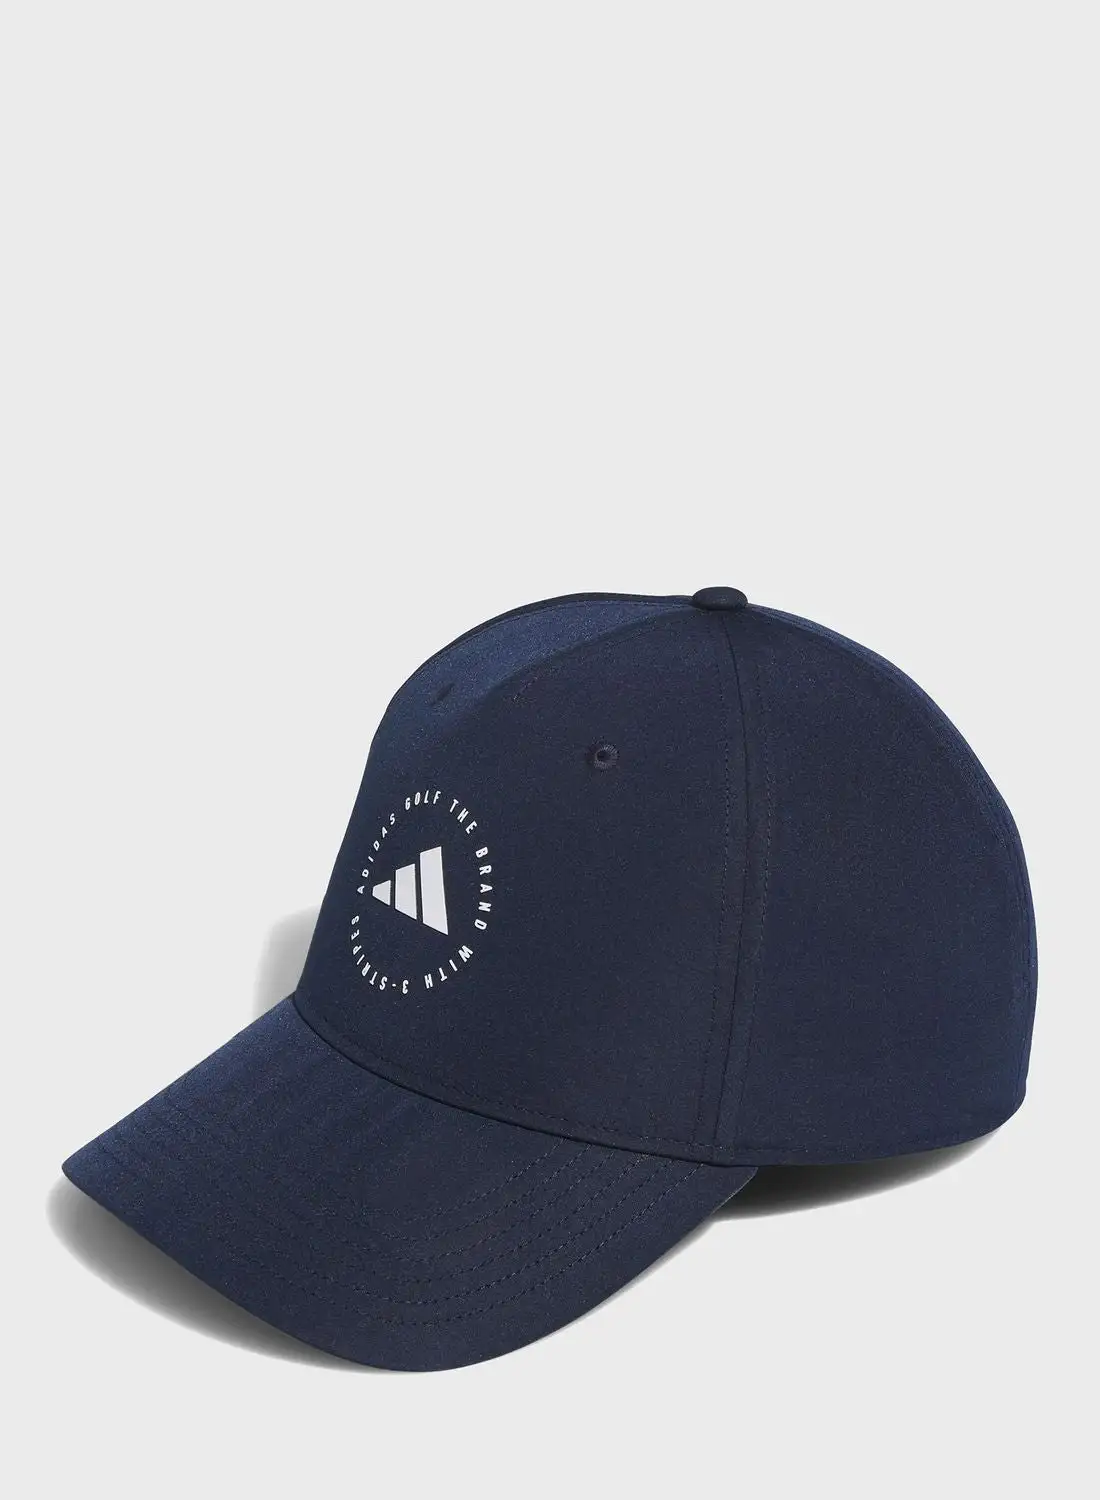 قبعة أداء الجولف من أديداس